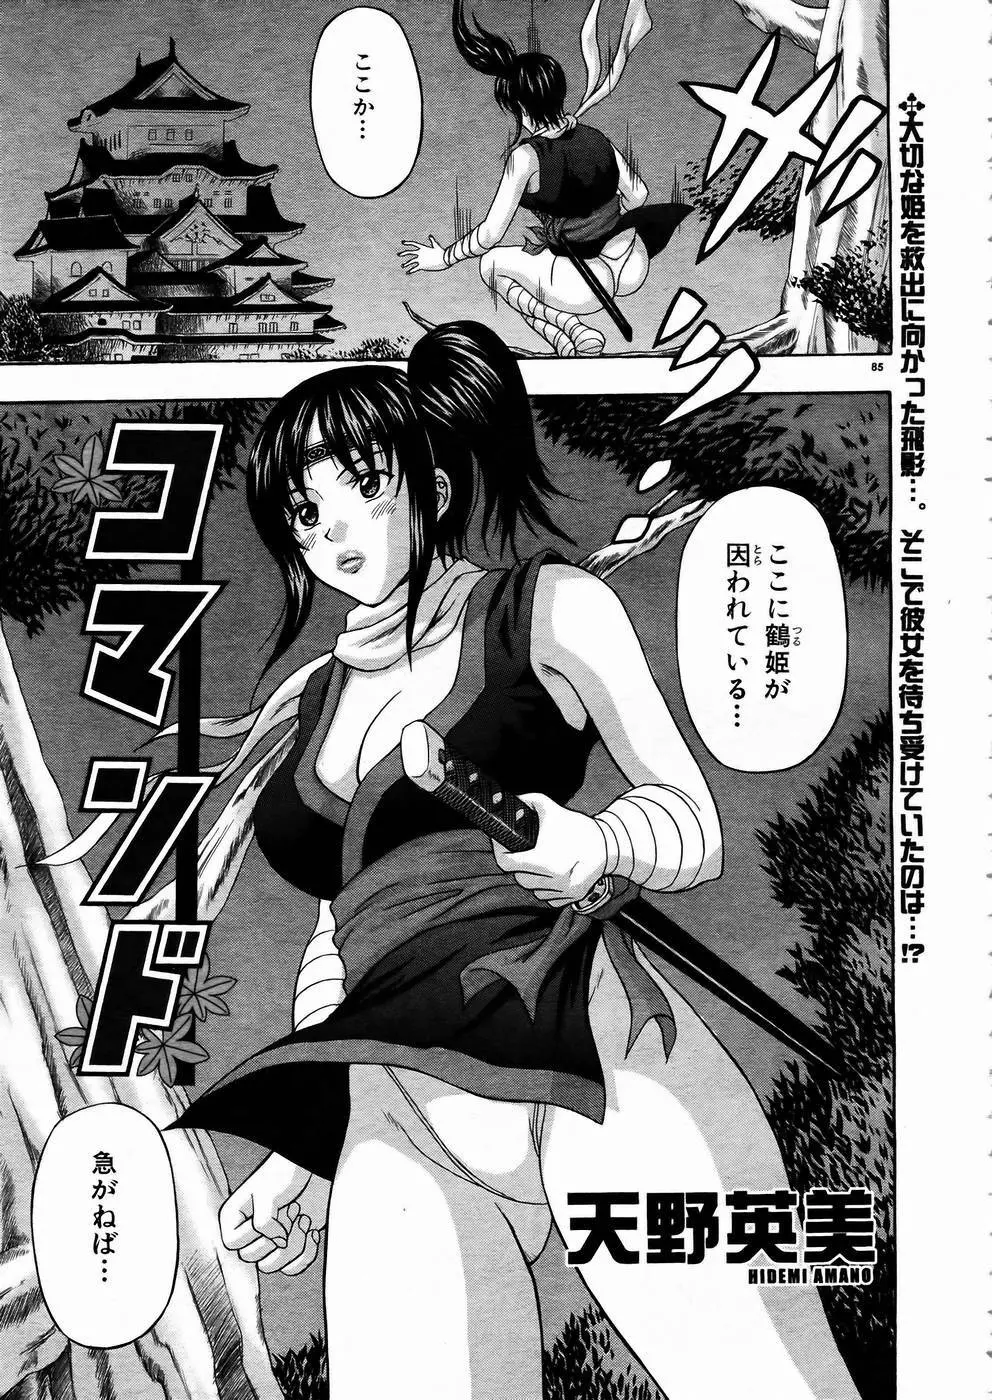 少女剣客凌辱コミック Vol.01 くノ一斬! 82ページ